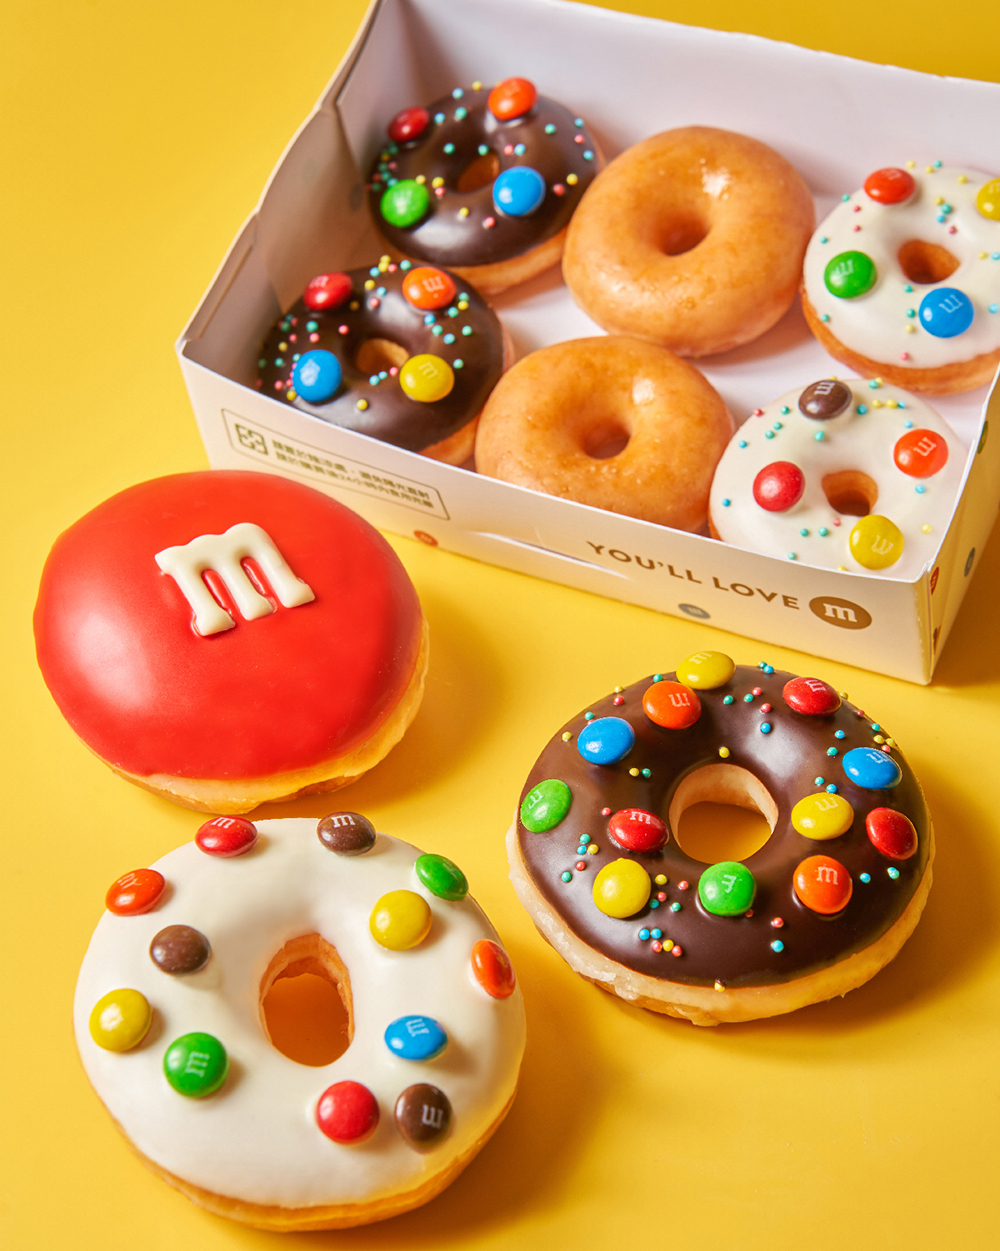 這次除了基本大小的甜甜圈，Krispy Kreme 特別推出的 M&M’s 迷你甜甜圈